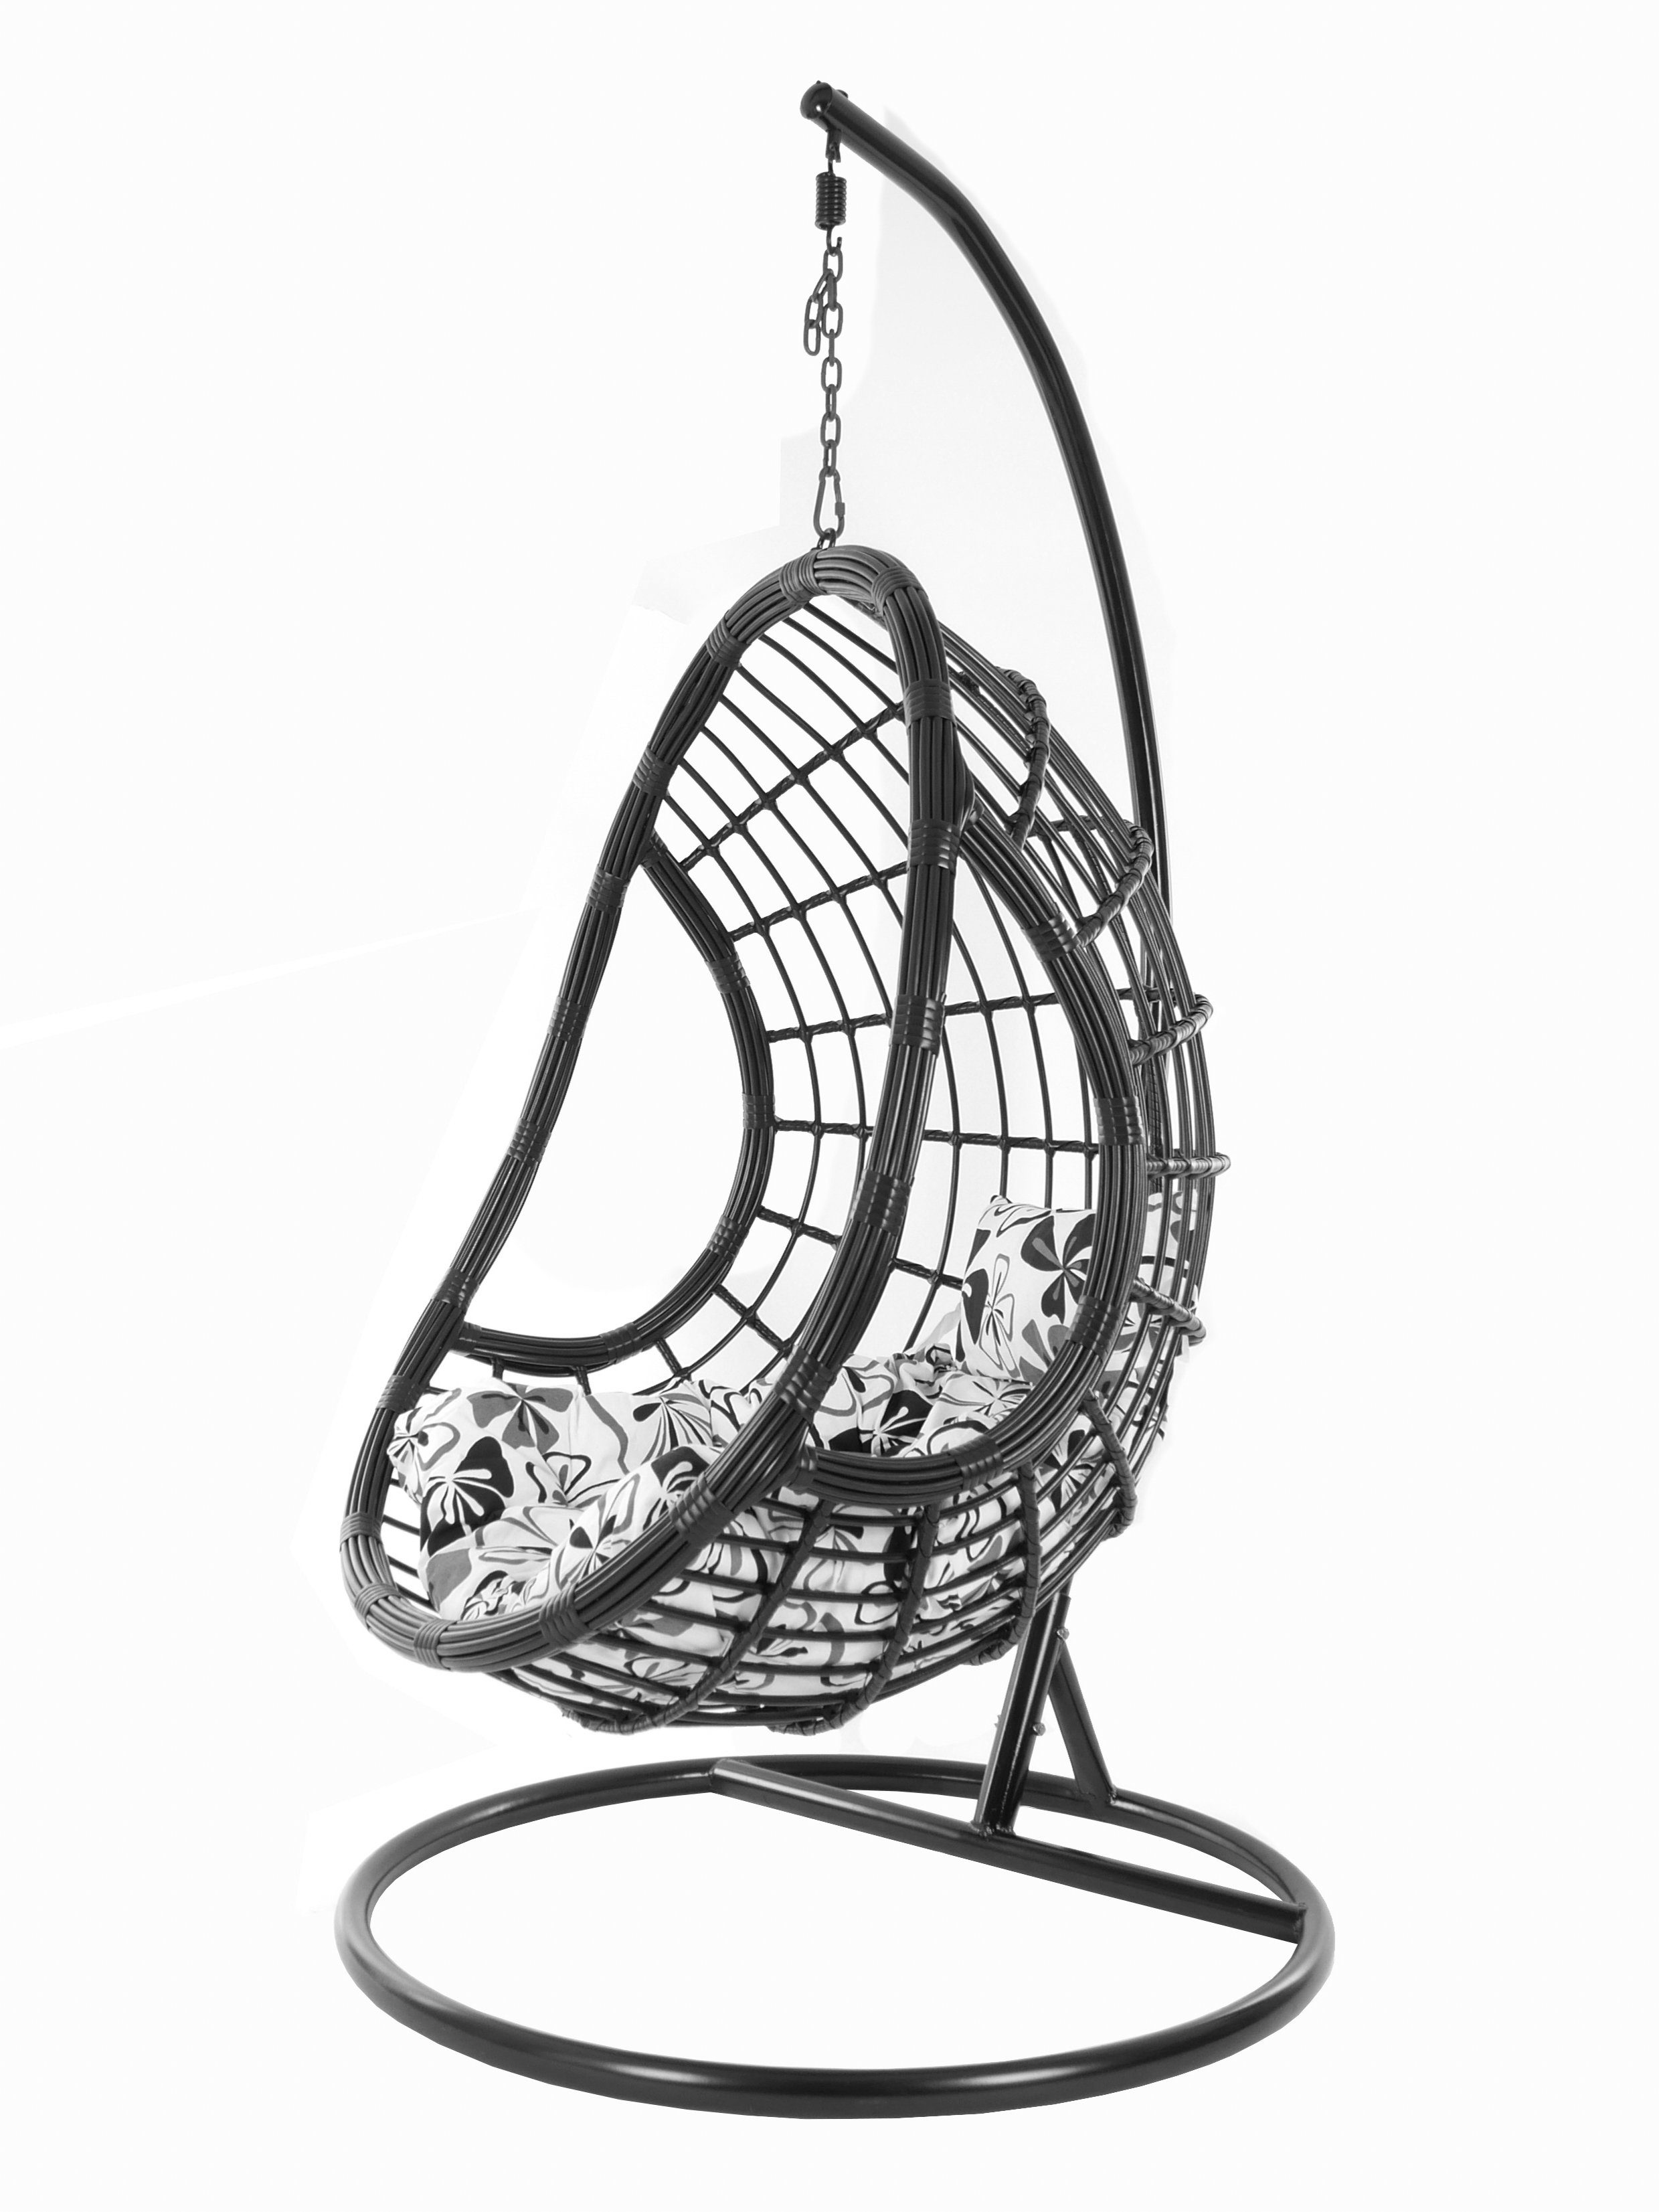 love) Hängesessel Swing schwarz, Loungemöbel, flower PALMANOVA black, KIDEO Gestell Chair, Hängesessel mit und Design grau Kissen, edles Schwebesessel, fossil (9800 blumenmuster